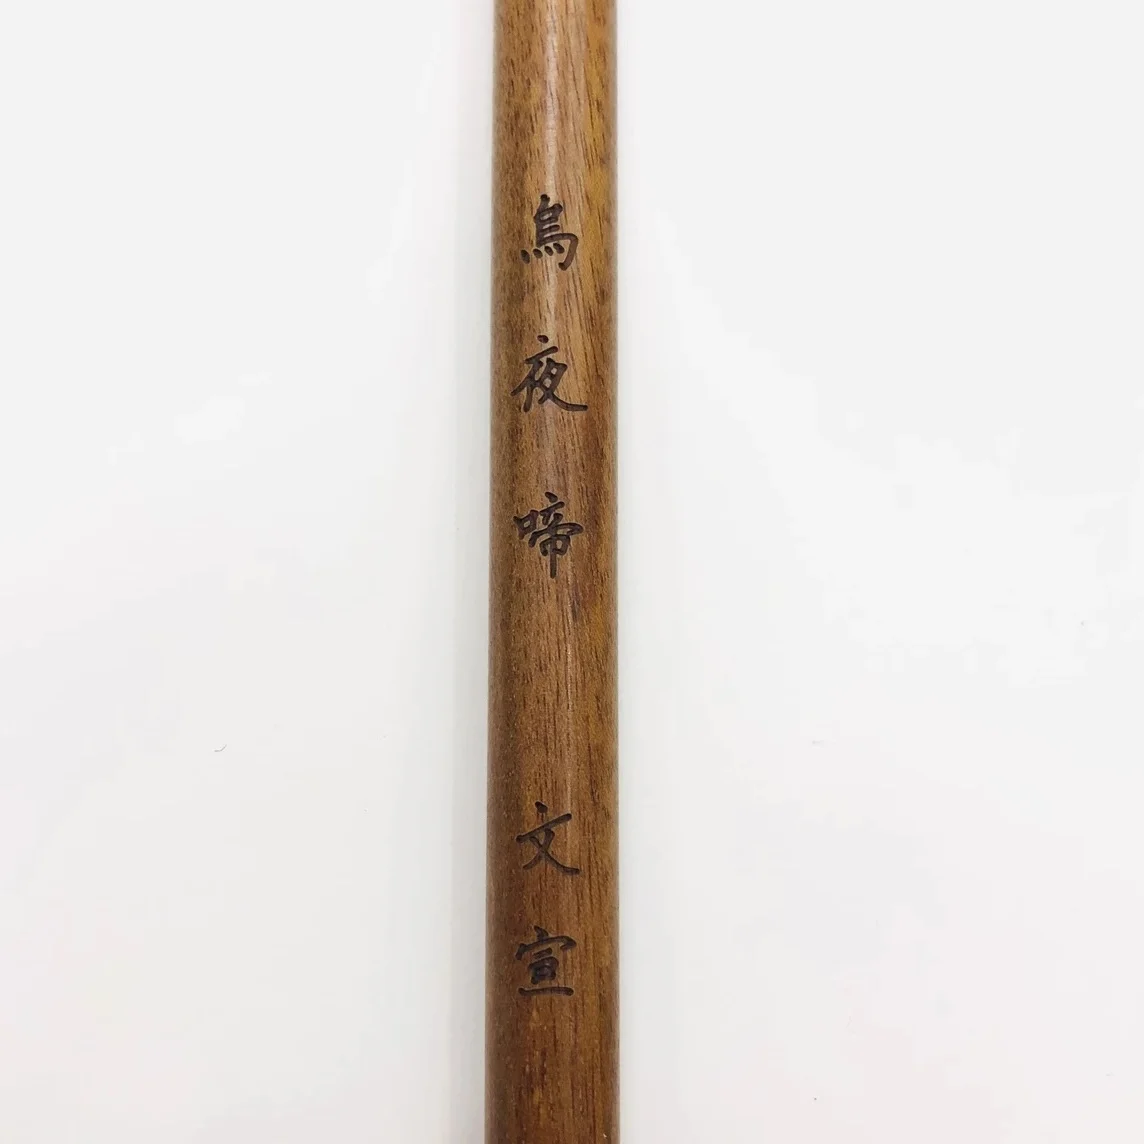 Кисточка для каллиграфии, ручка, китайский обычный бегущий скрипт, кисточка для письма из шерсти ласки, для начинающих, скоропись Шоу Цзинь Ти,